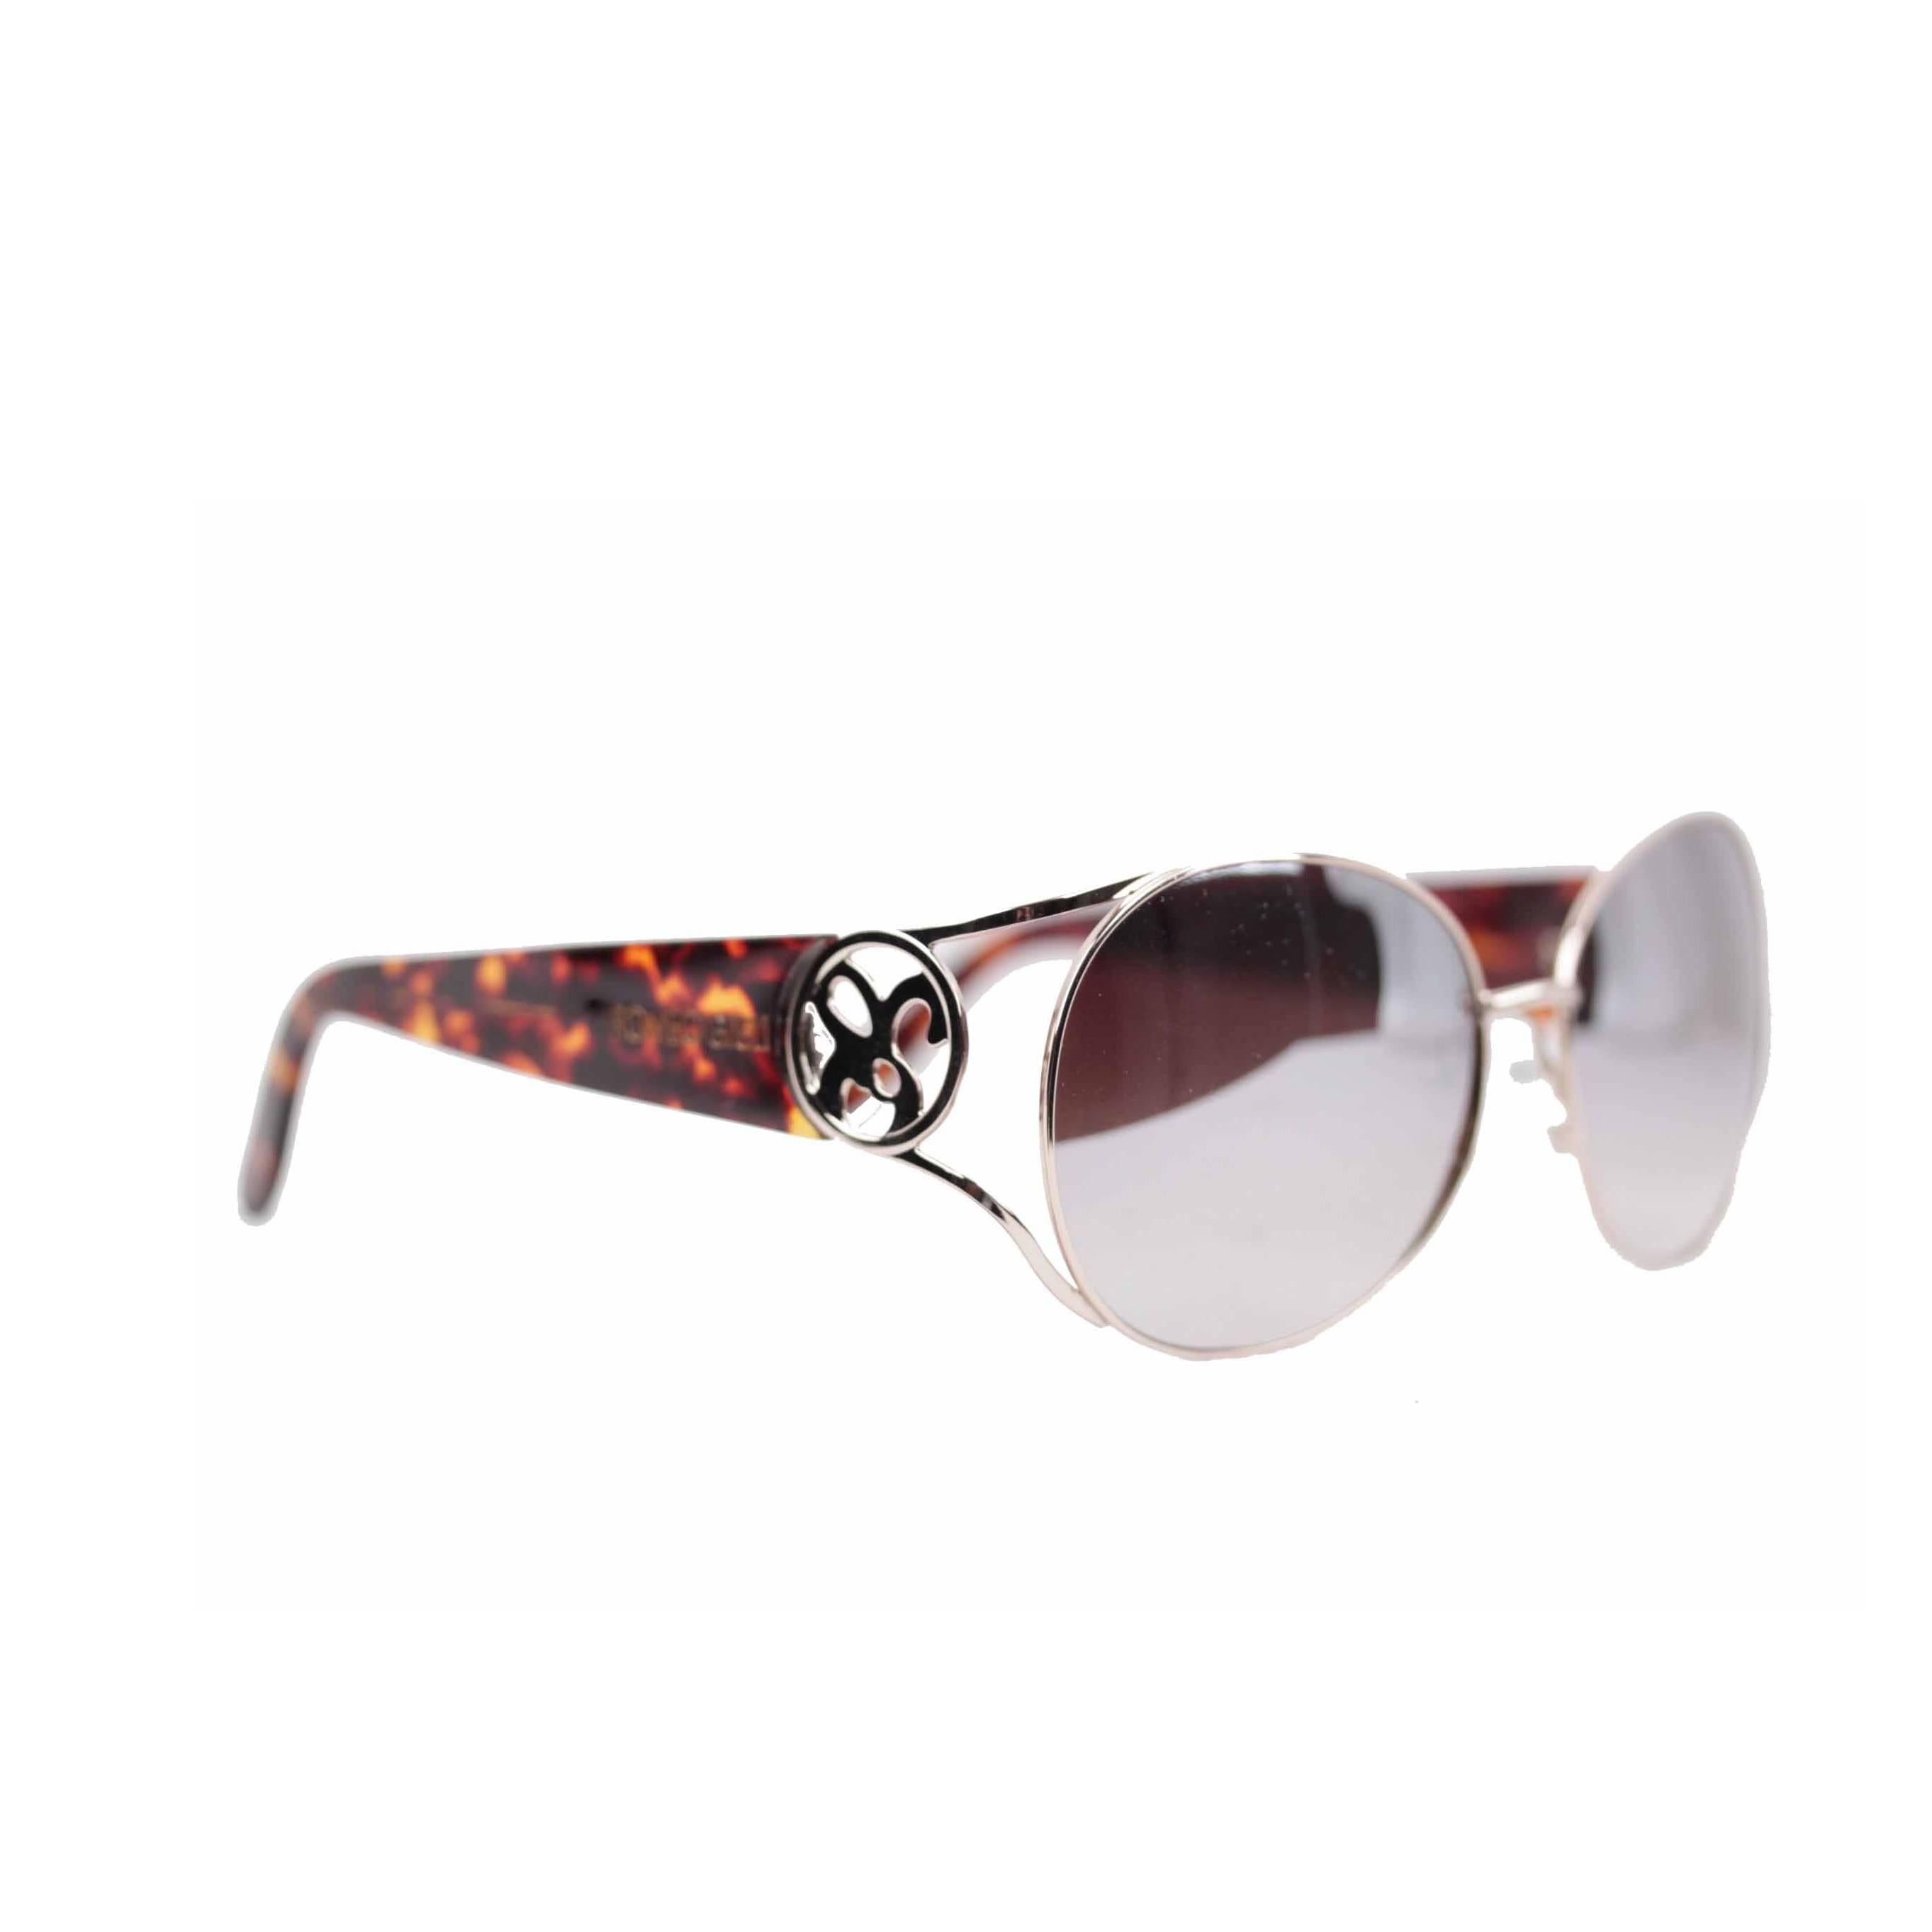 ROMEO GIGLI silver/brown oversized Sunglasses RGG4/S col.D 61/15 135 mirror lens